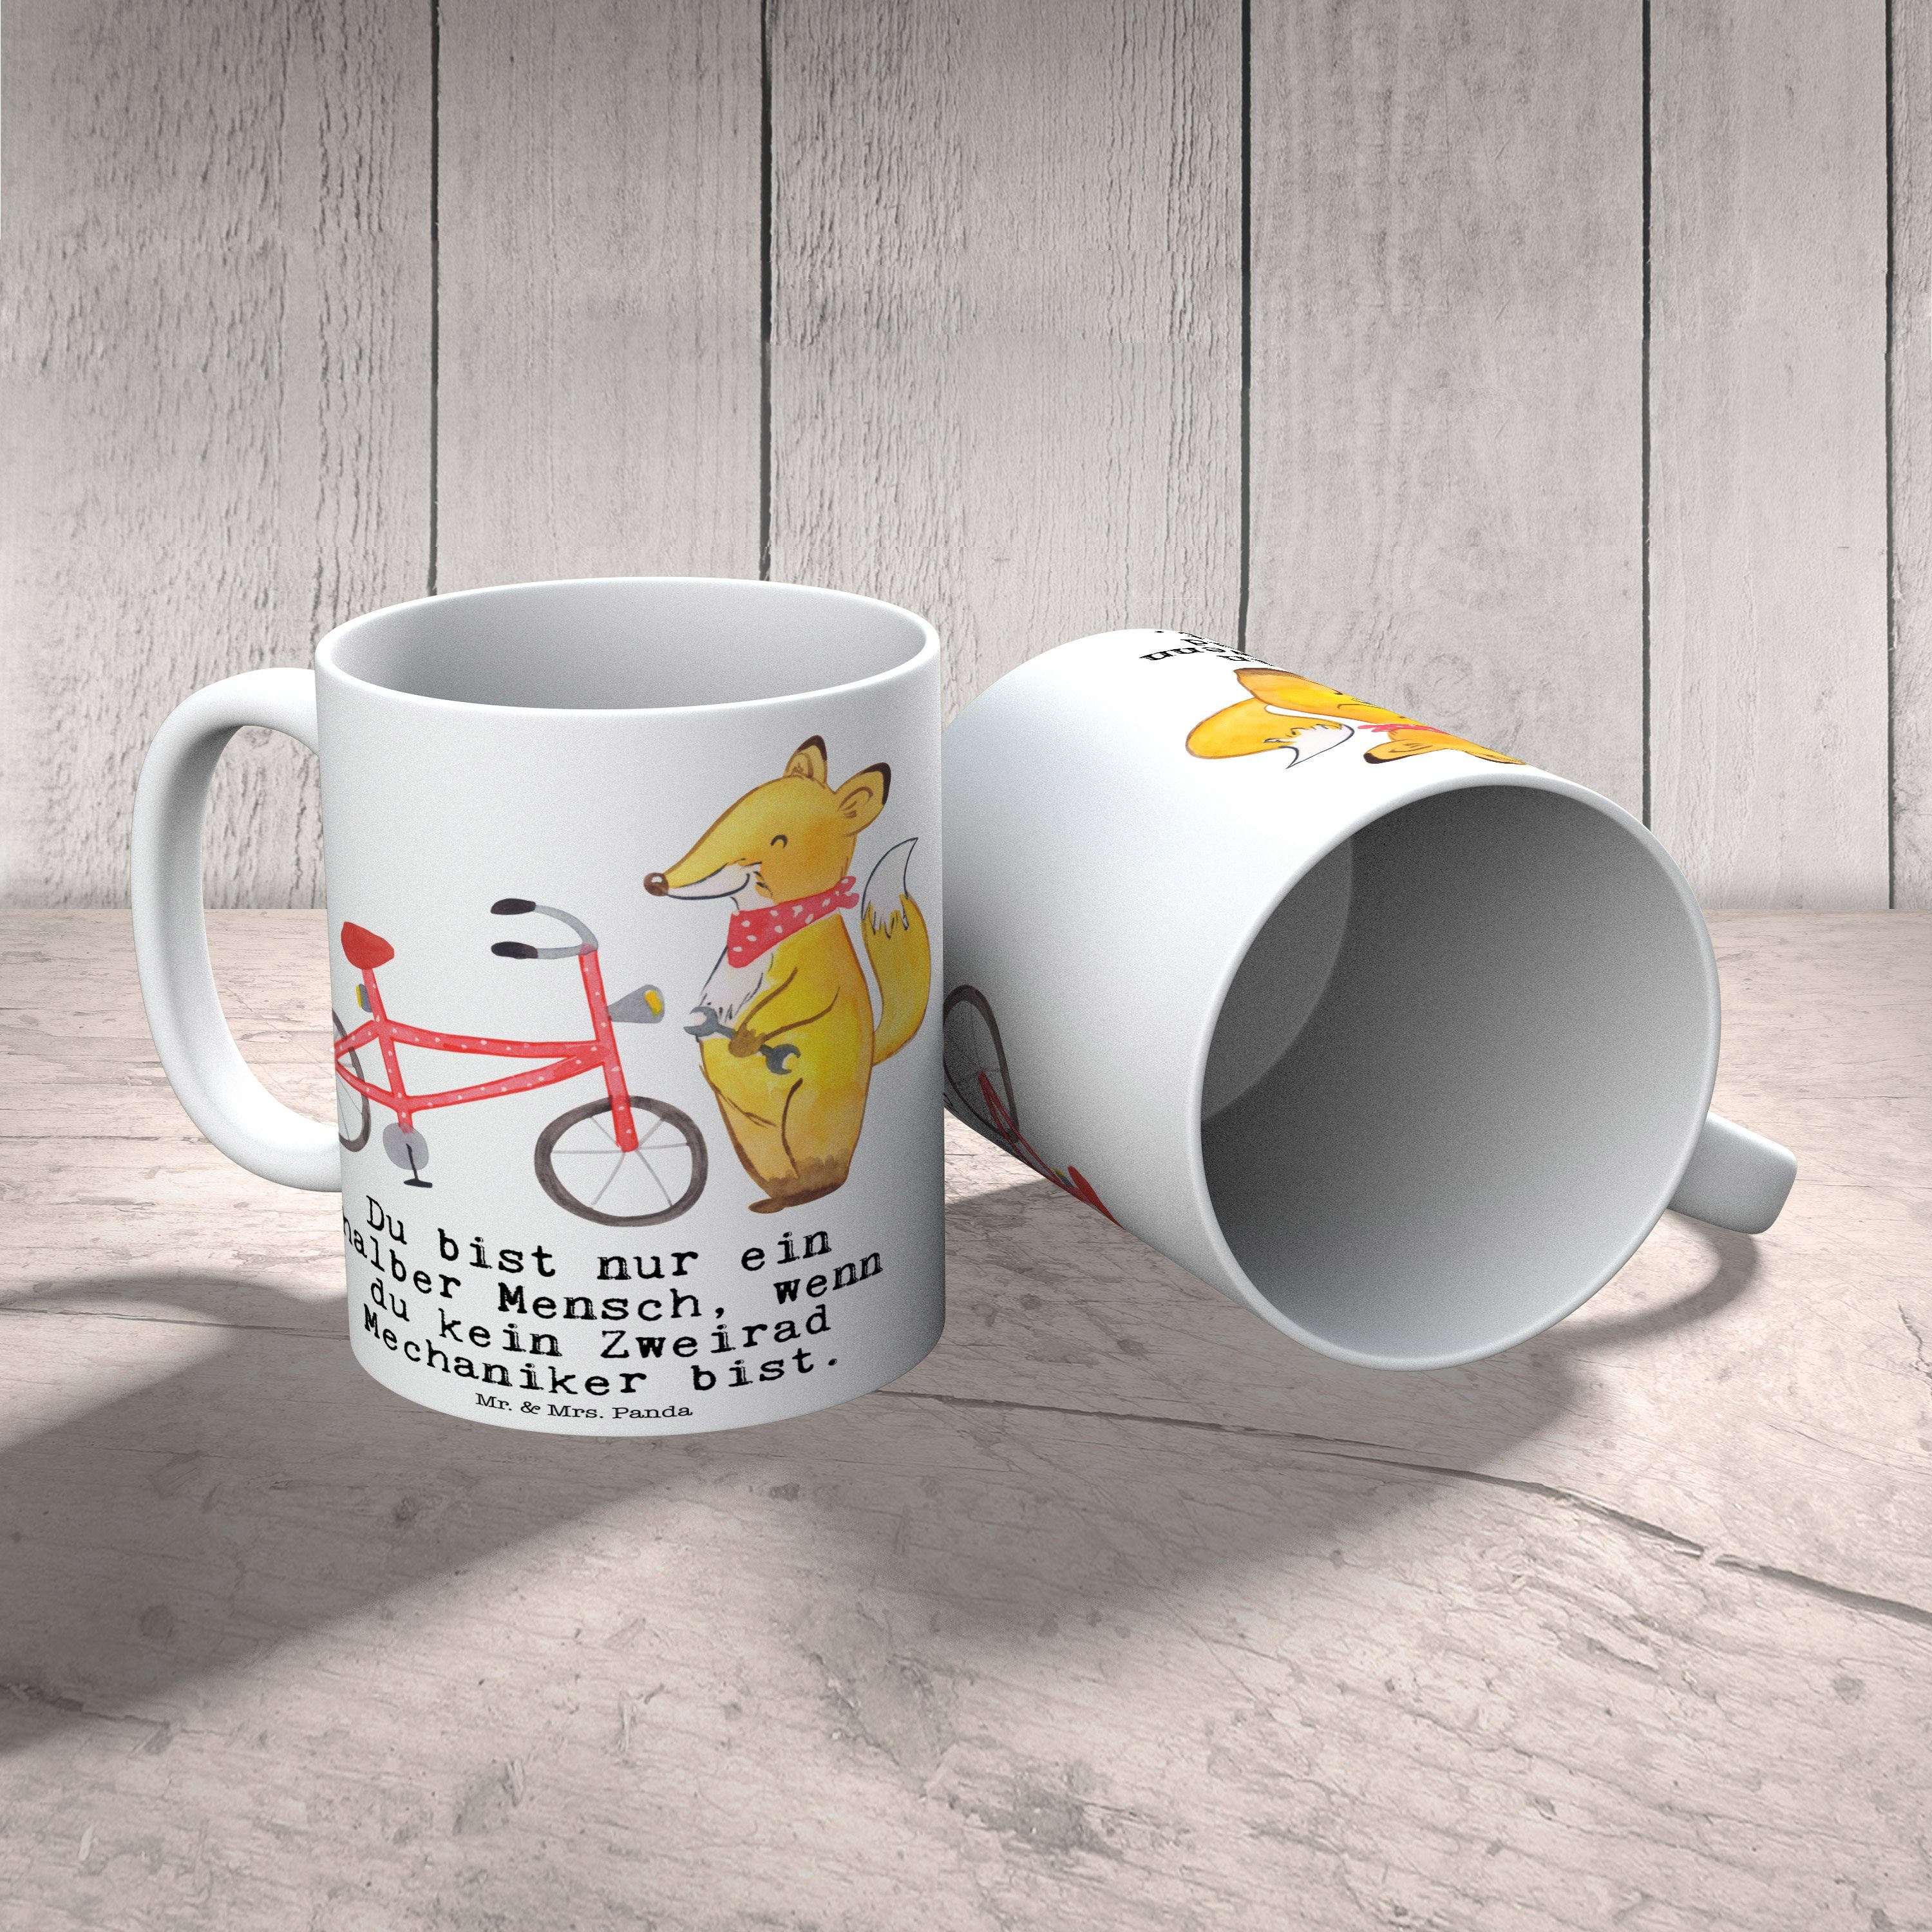 Mr. & Mrs. Panda mit Becher, Geschenk, Geschenk - Zweirad Tasse Herz Weiß Keramik - Tasse, Mechaniker